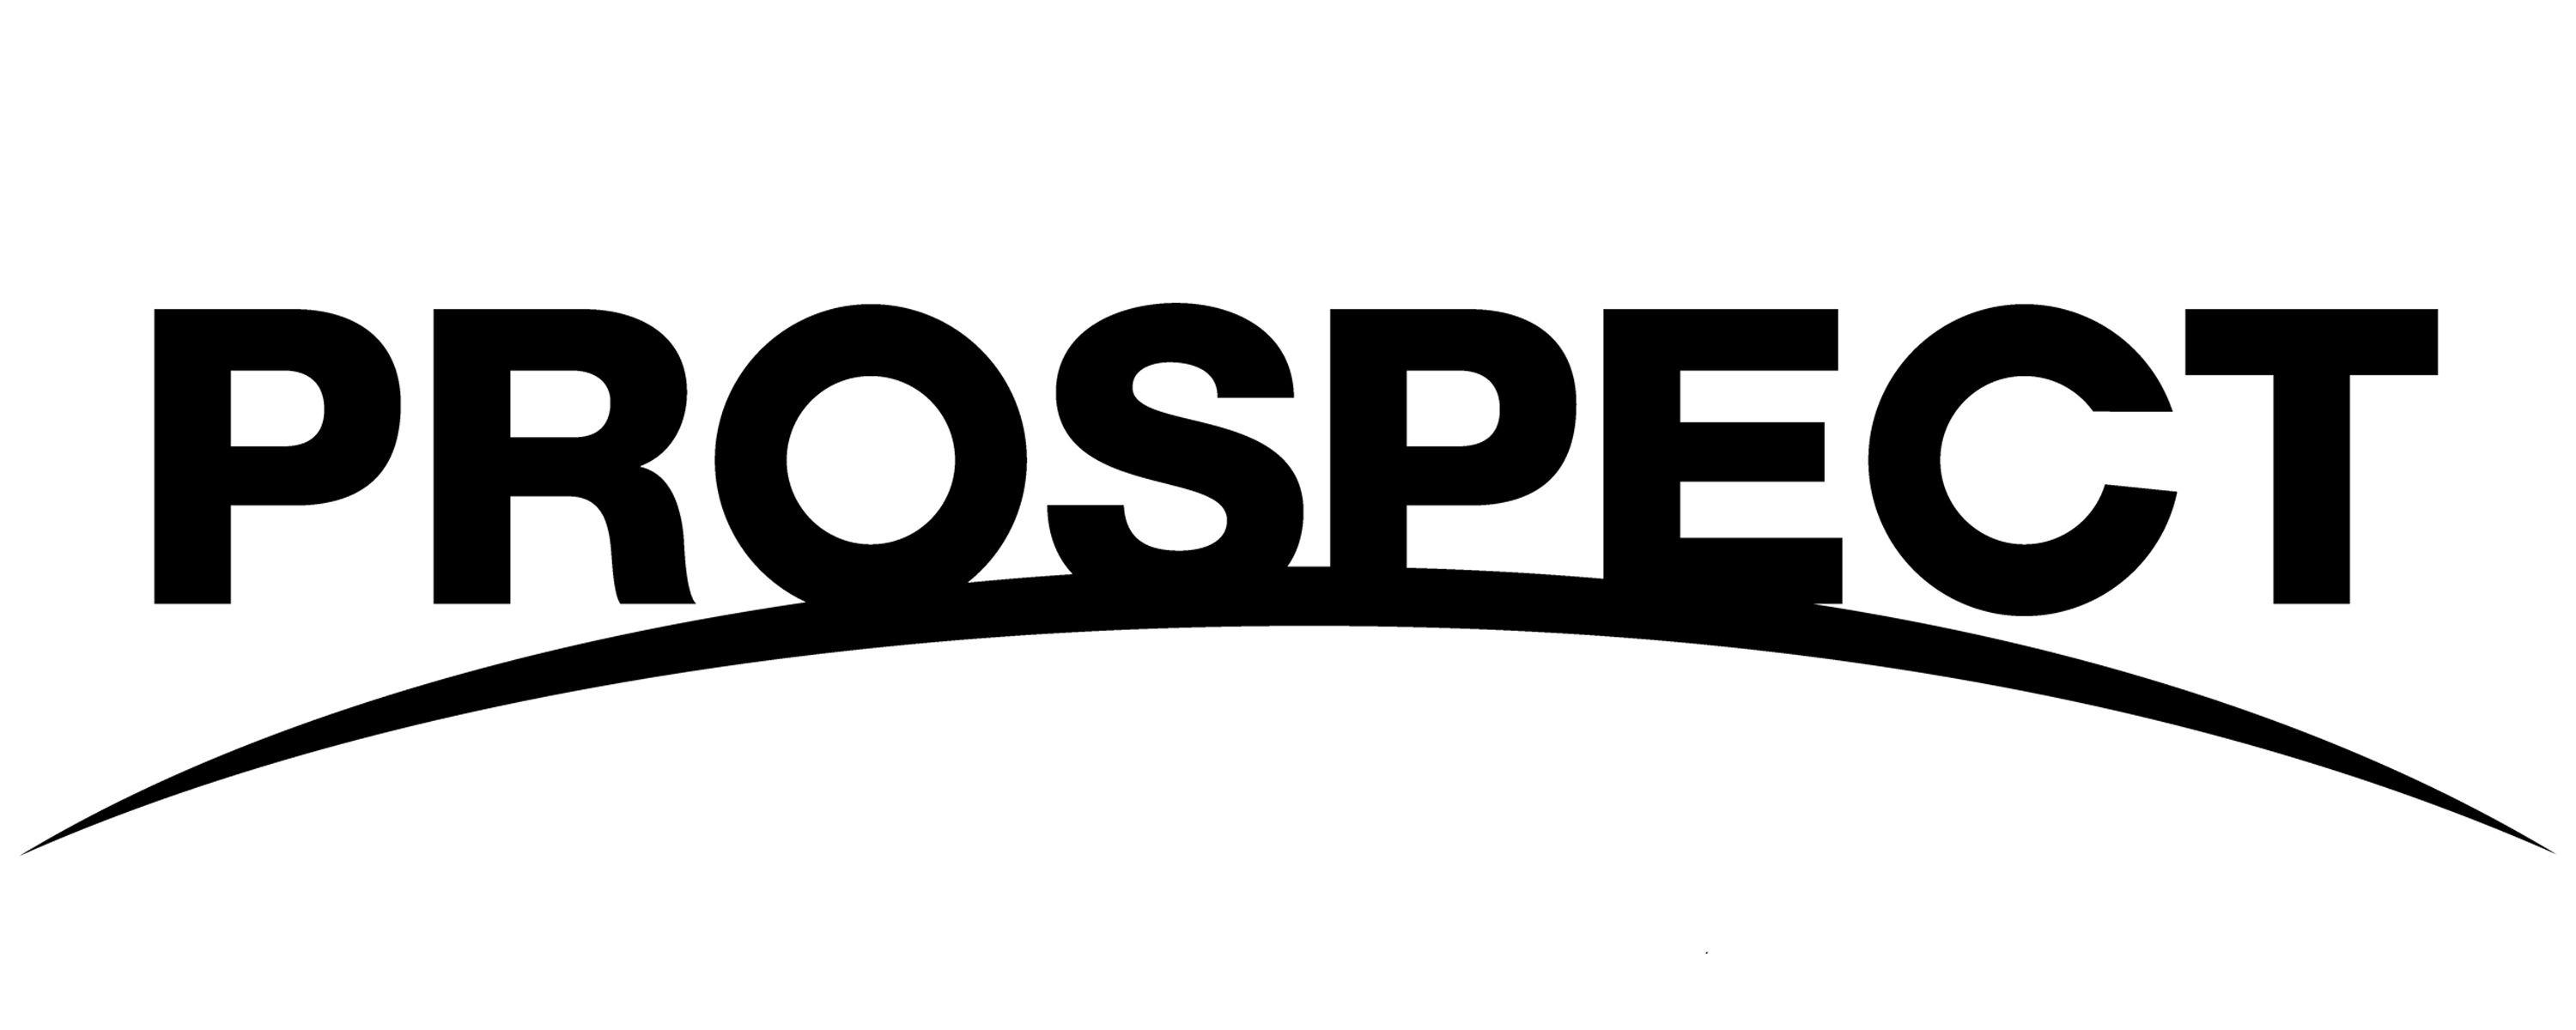 Prospect Logo - prospect-logo - The Immigrant Education Society - TIES